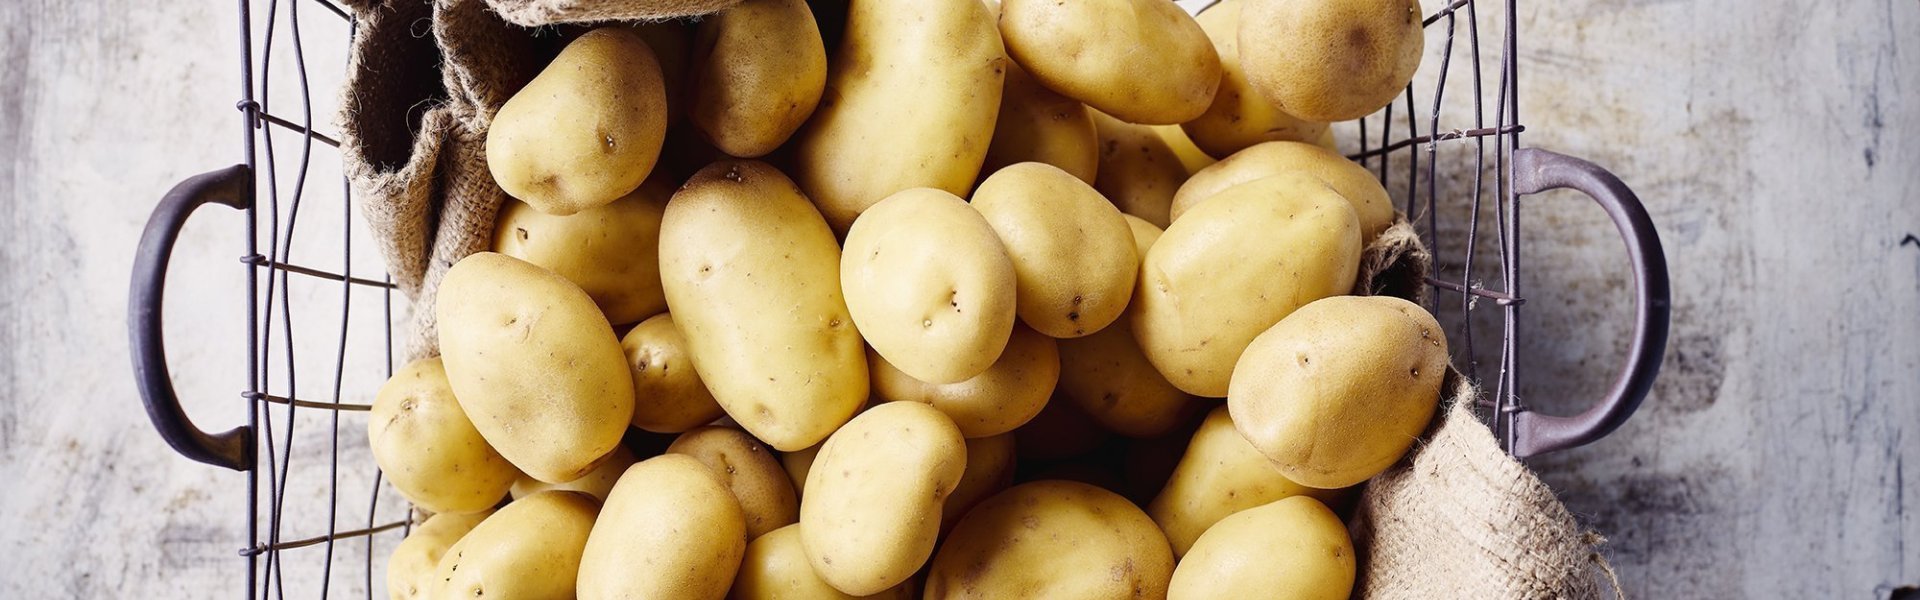 Aardappelen liggen in ijzeren mand met bruine linnen doek onder. De mand staat op een grijze gietbeton.